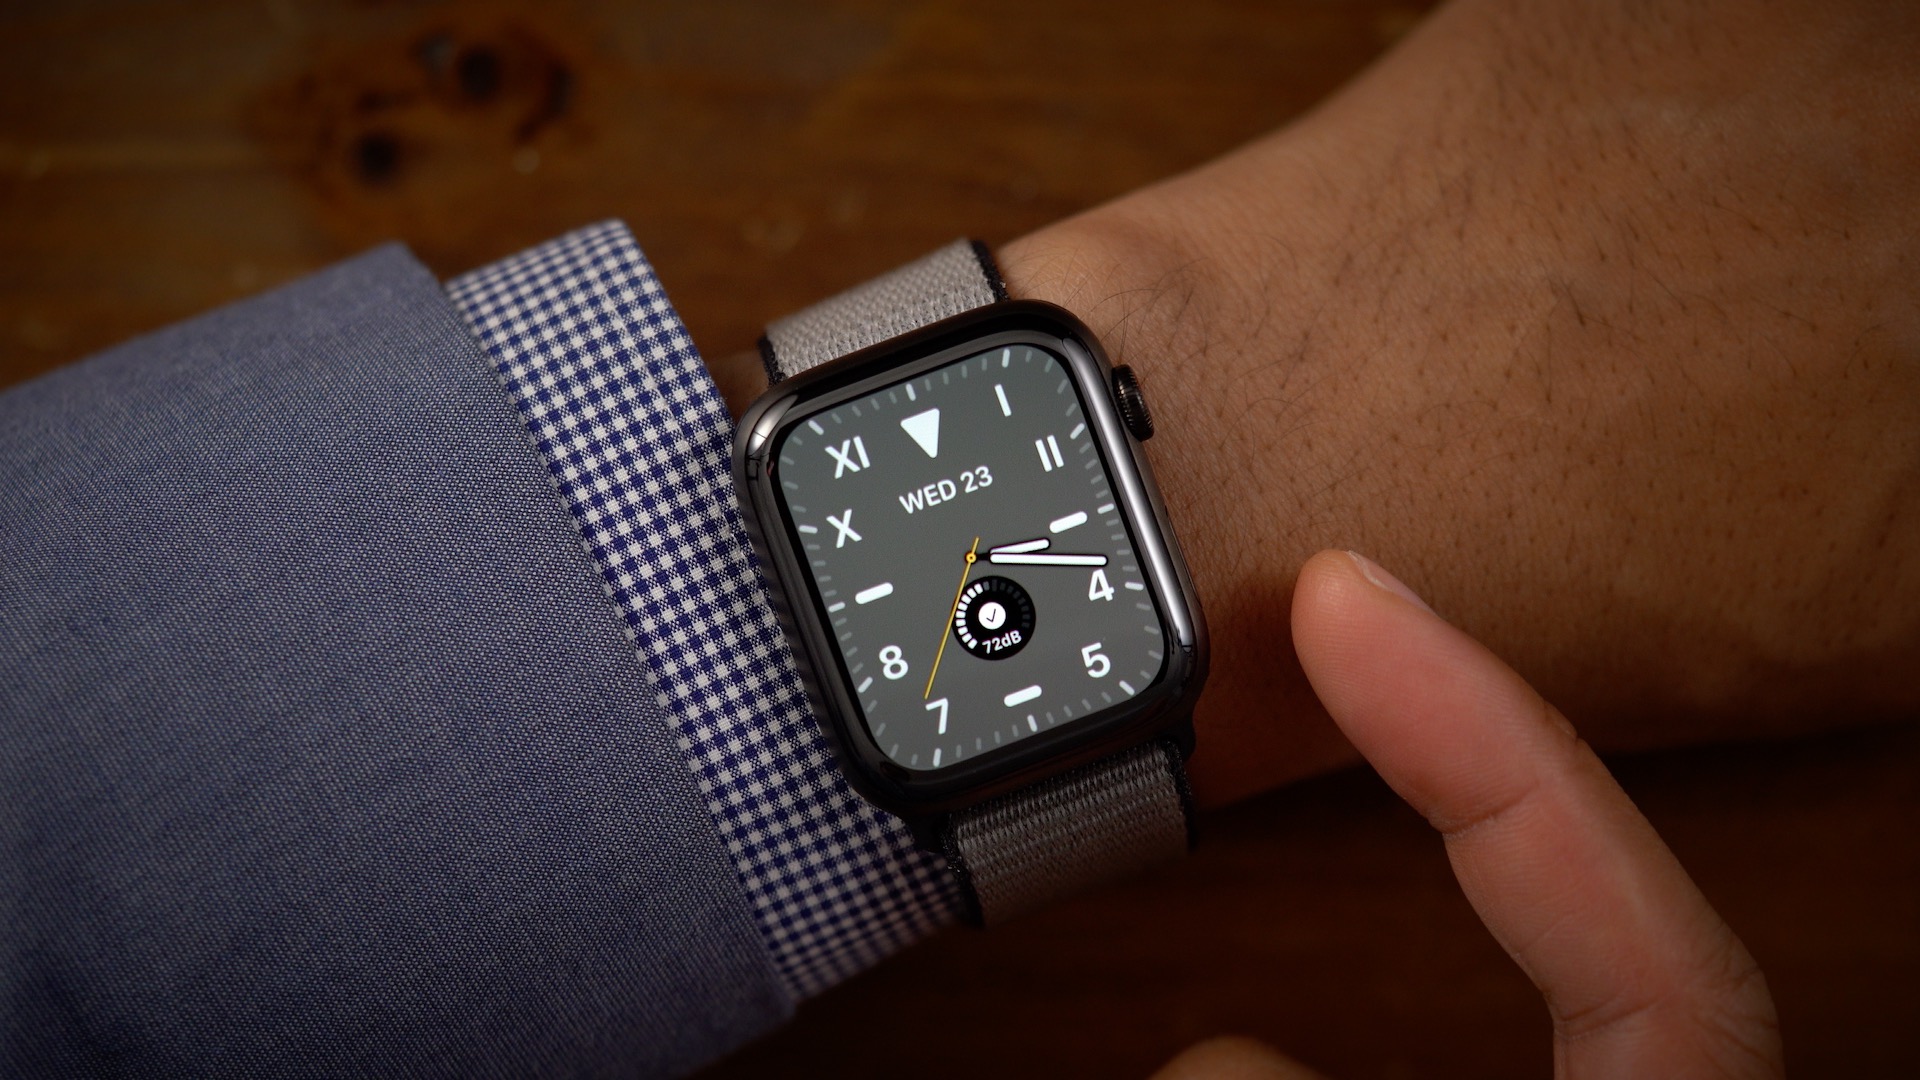 5 tính năng iFan đang mong chờ ở Apple Watch 6 và watchOS 7 mới